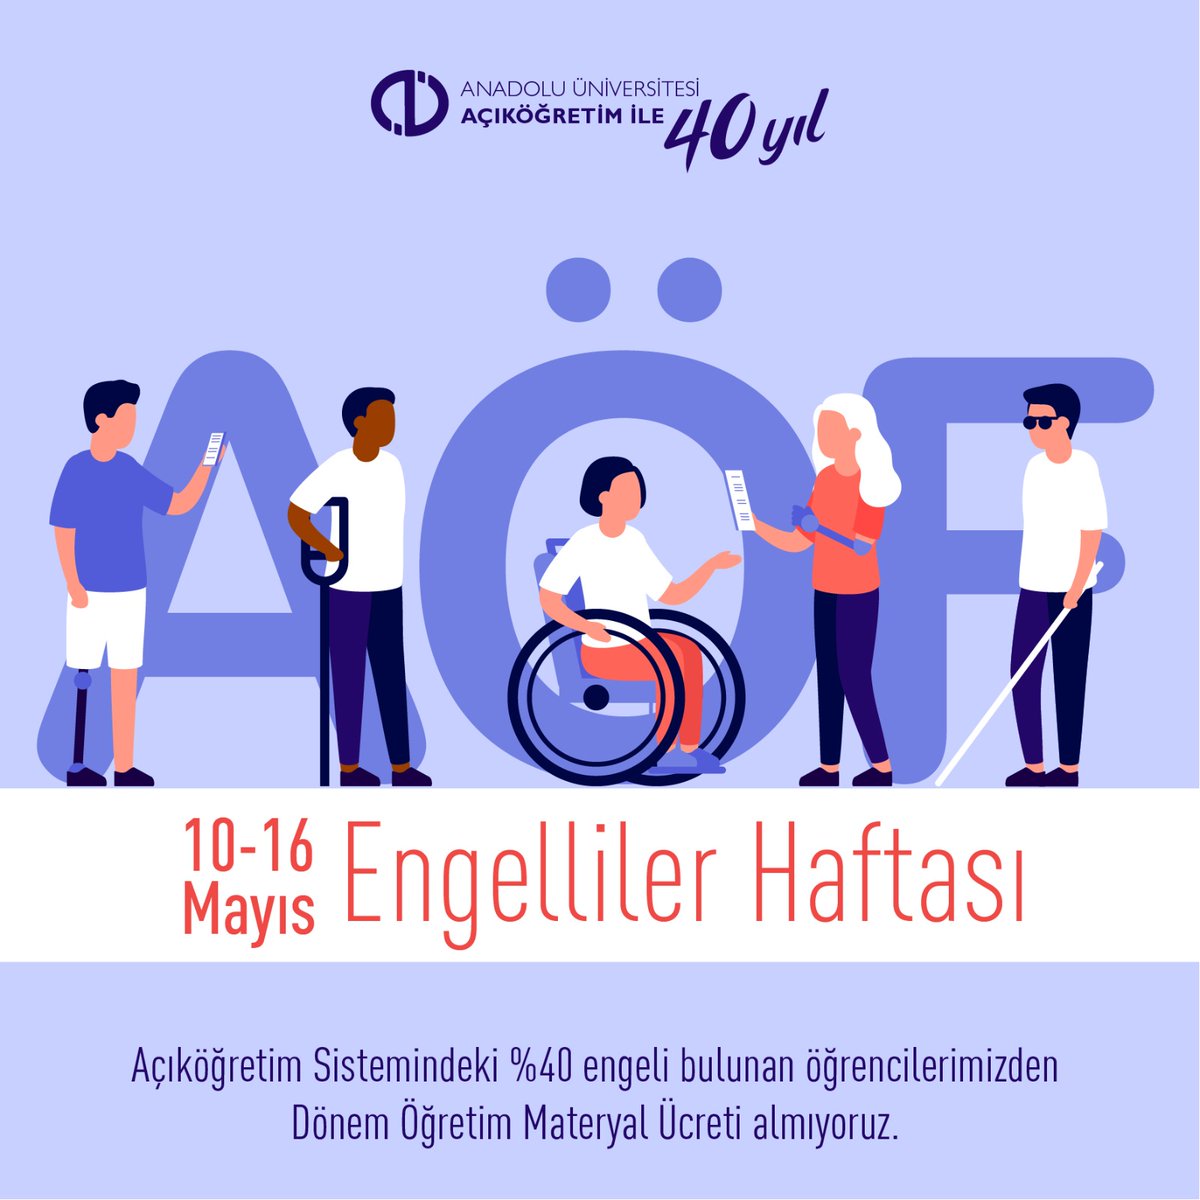 10-16 Mayıs Engelliler Haftası ♿ #AnadoluÜniversitesi #Aös #AçıköğretimSistemi #EngellilerHaftası